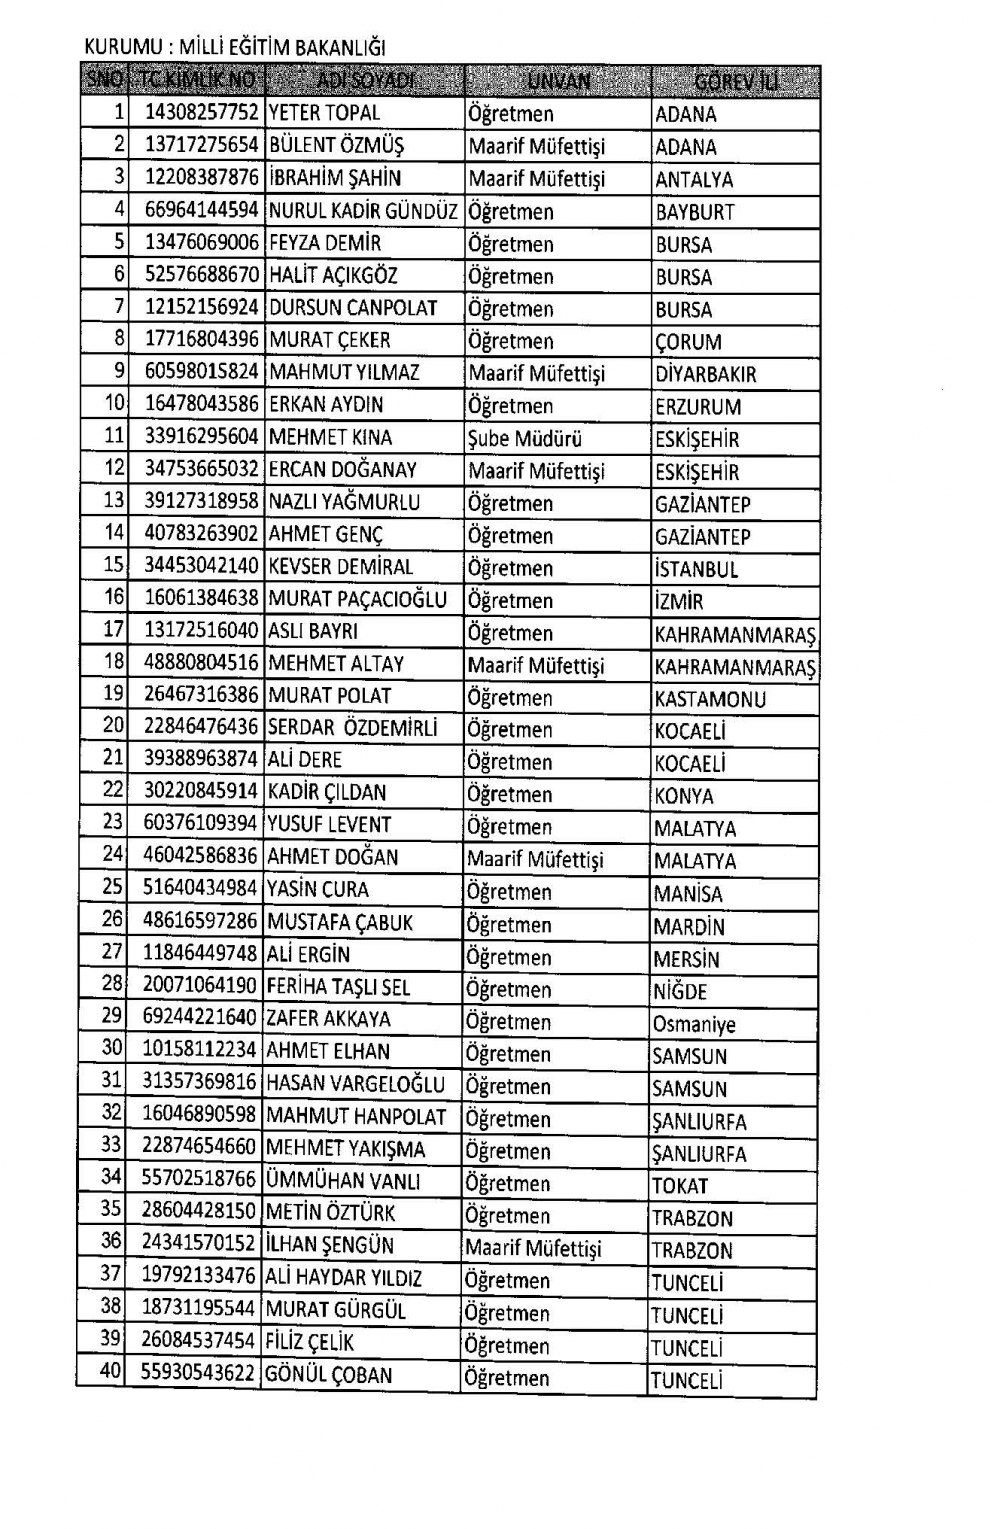 KHK ile görevine iade edilen personelin tam listesi 15 Temmuz 19